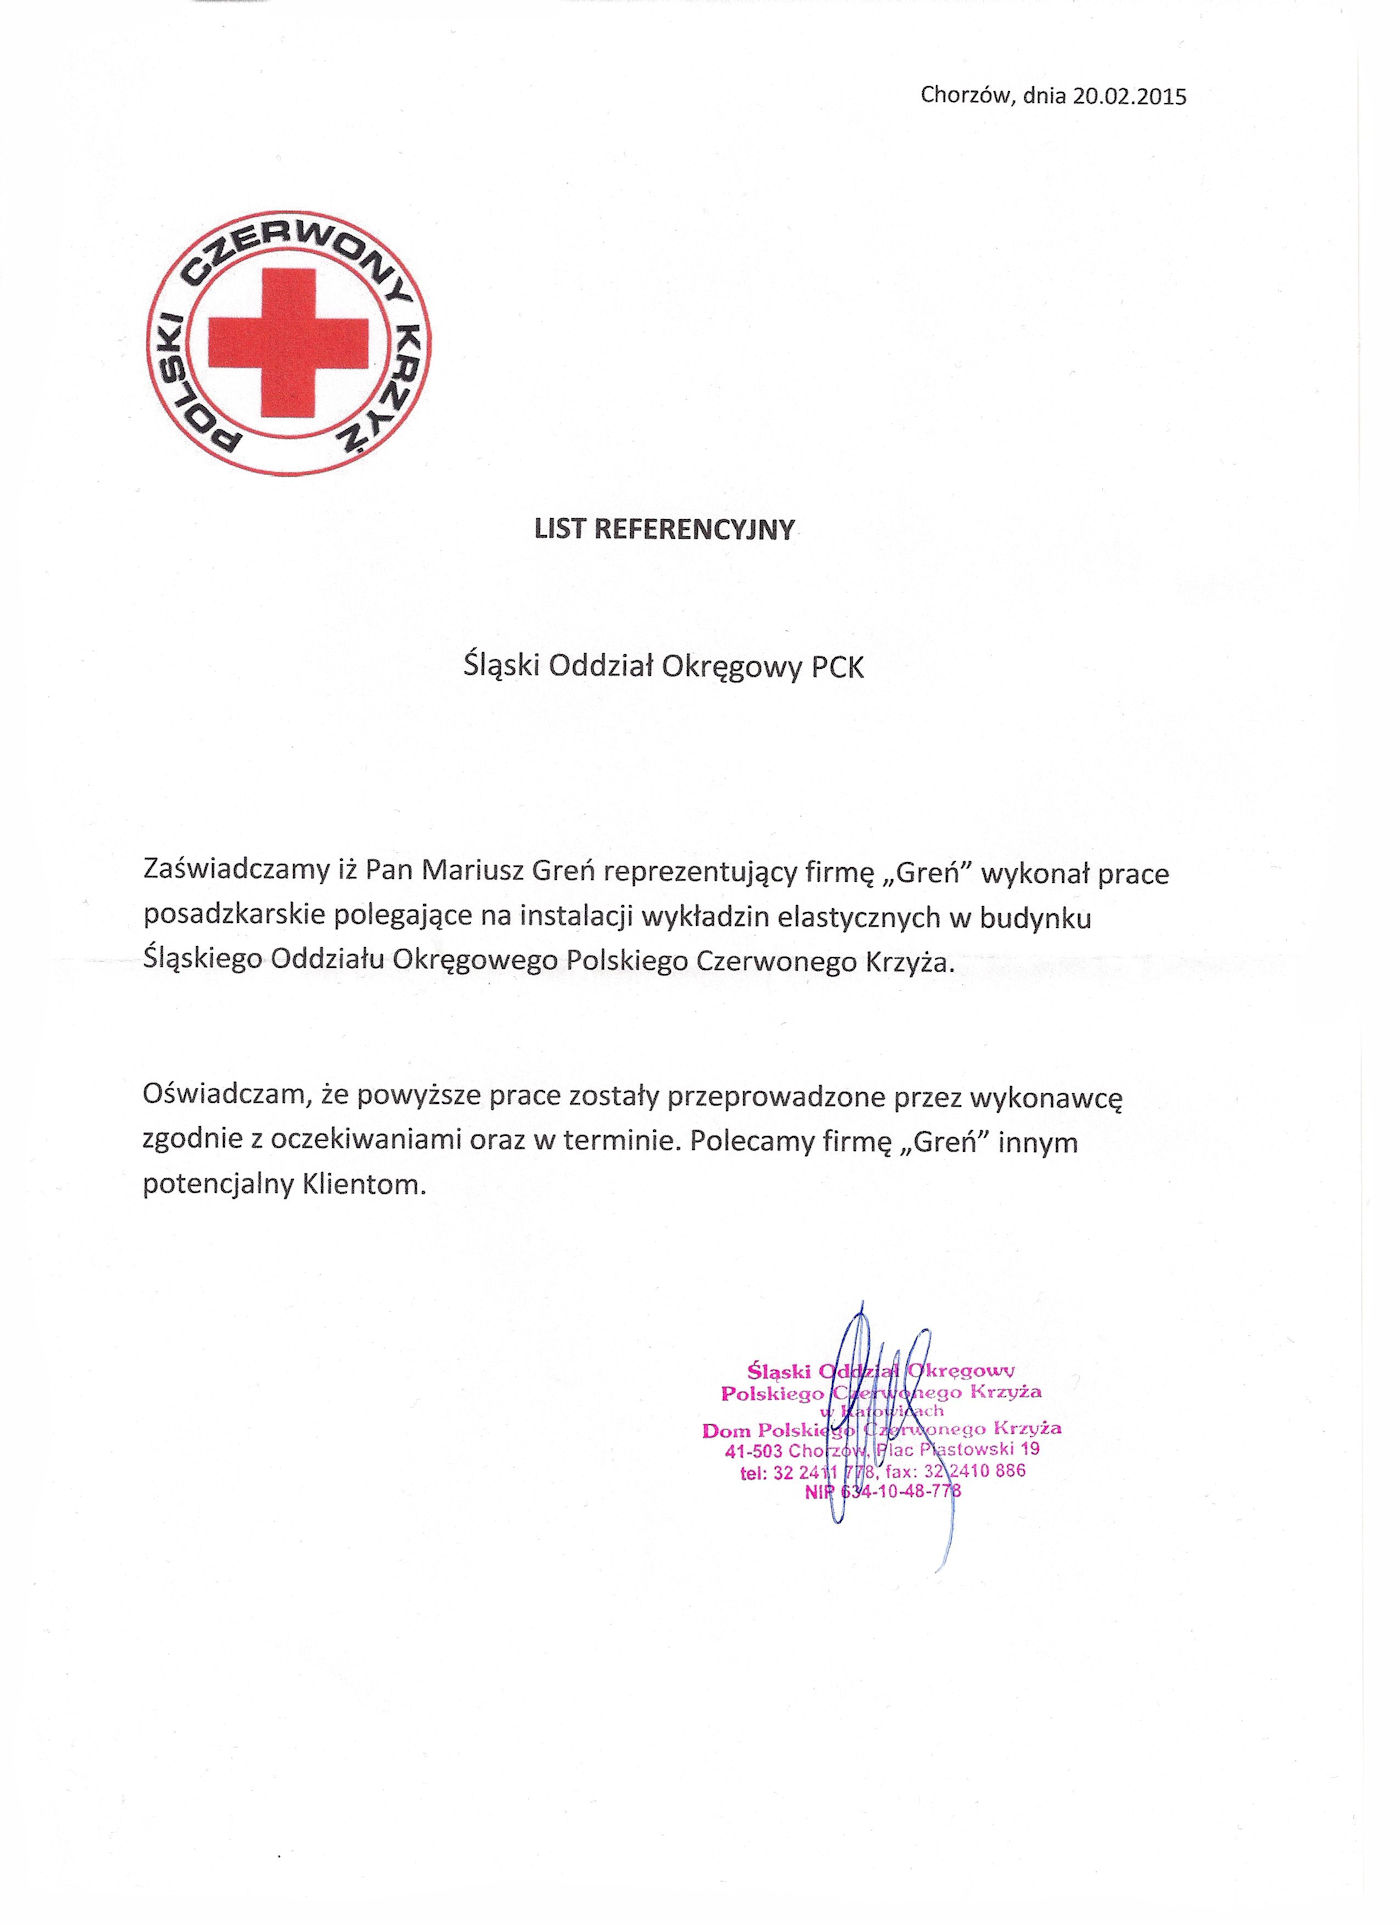 Polski Czerwony Krzyż, oddział Chorzów